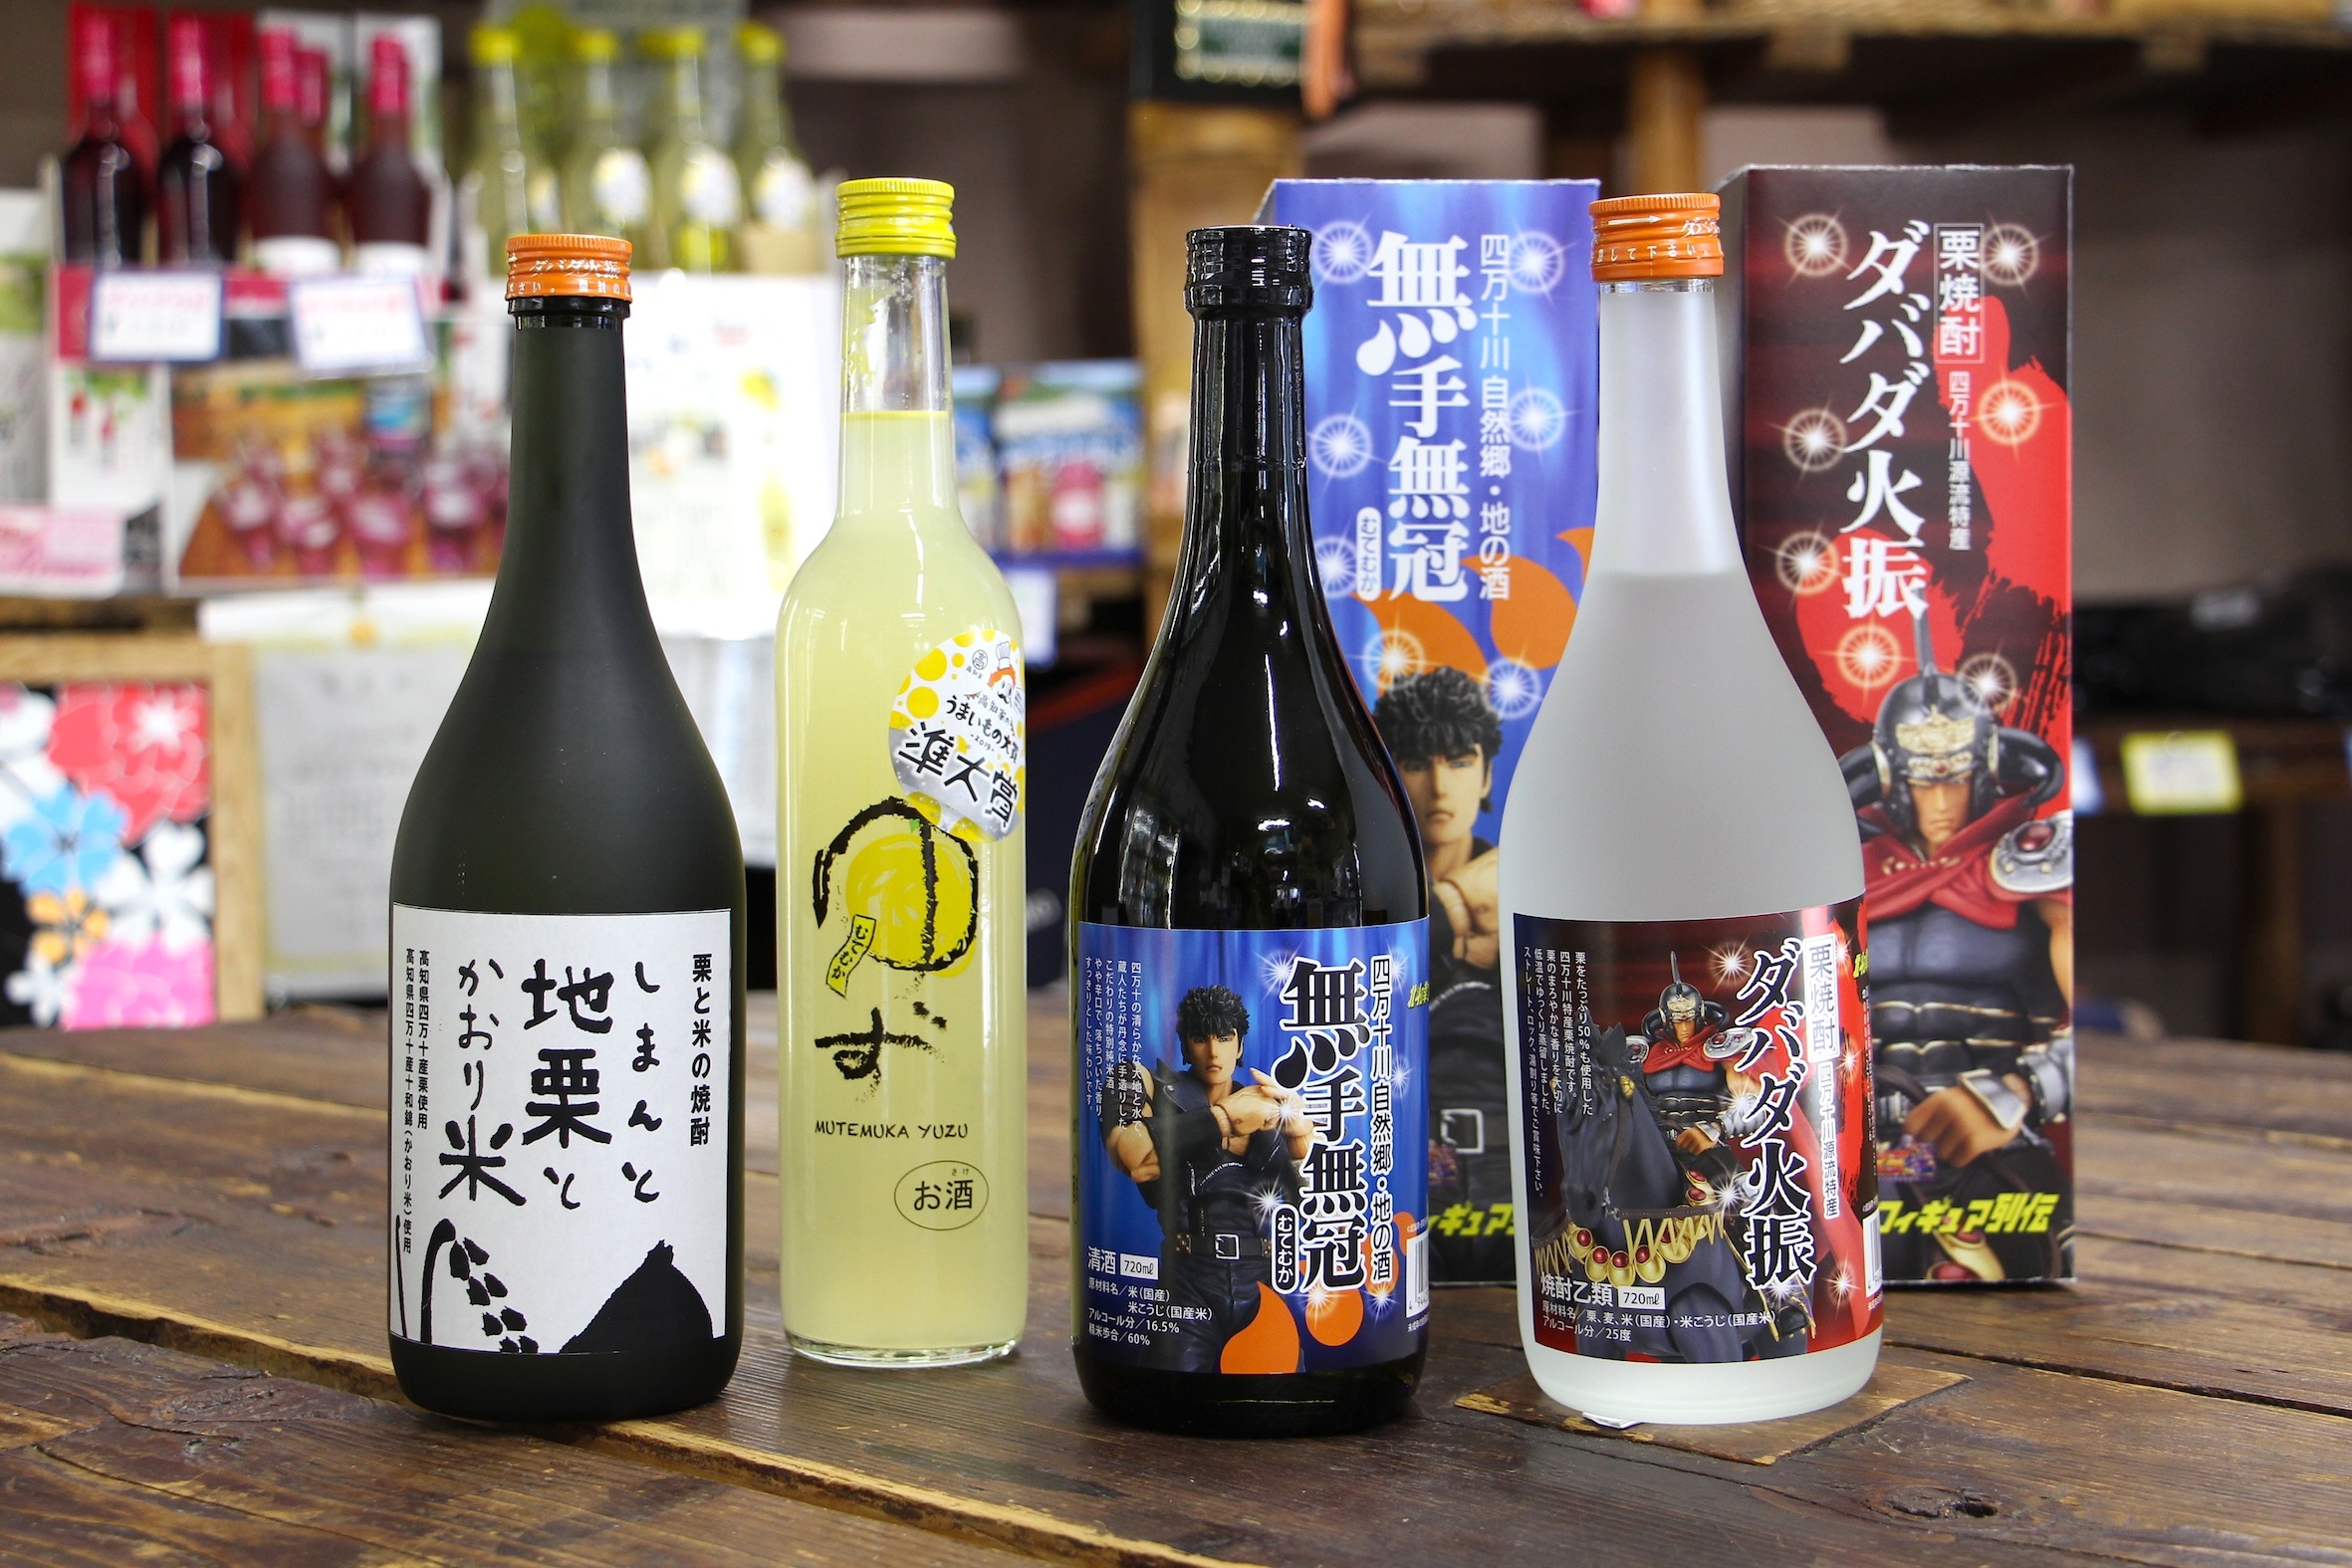 ダバダ 栗 焼酎 幻の栗焼酎「ダバダ火振」は、日本酒蔵で生まれた。